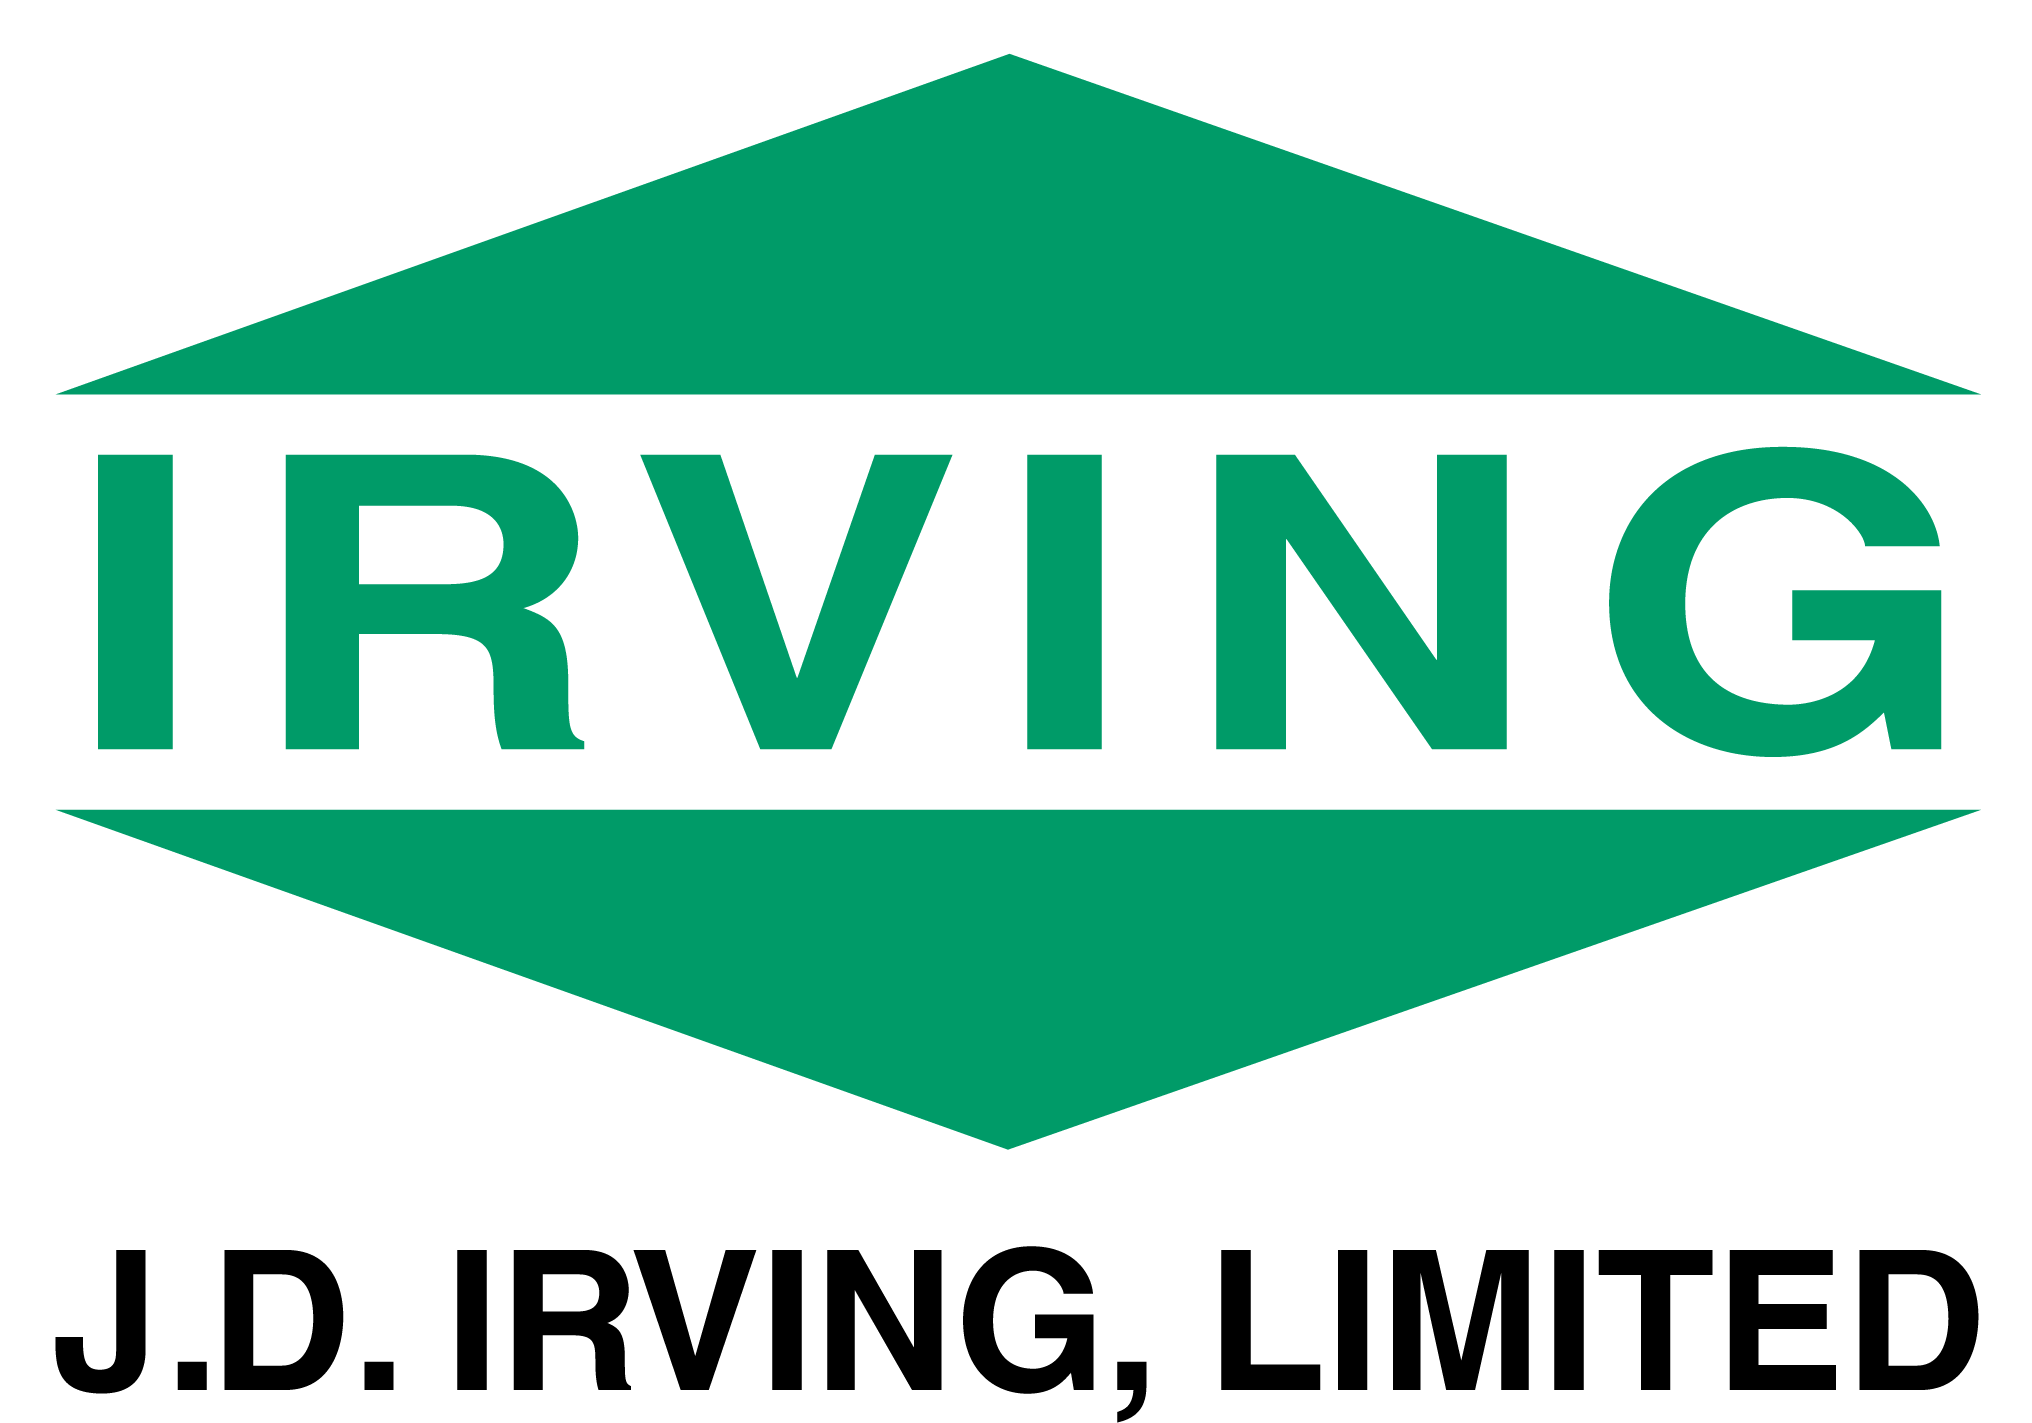 J.D. Irving Limited